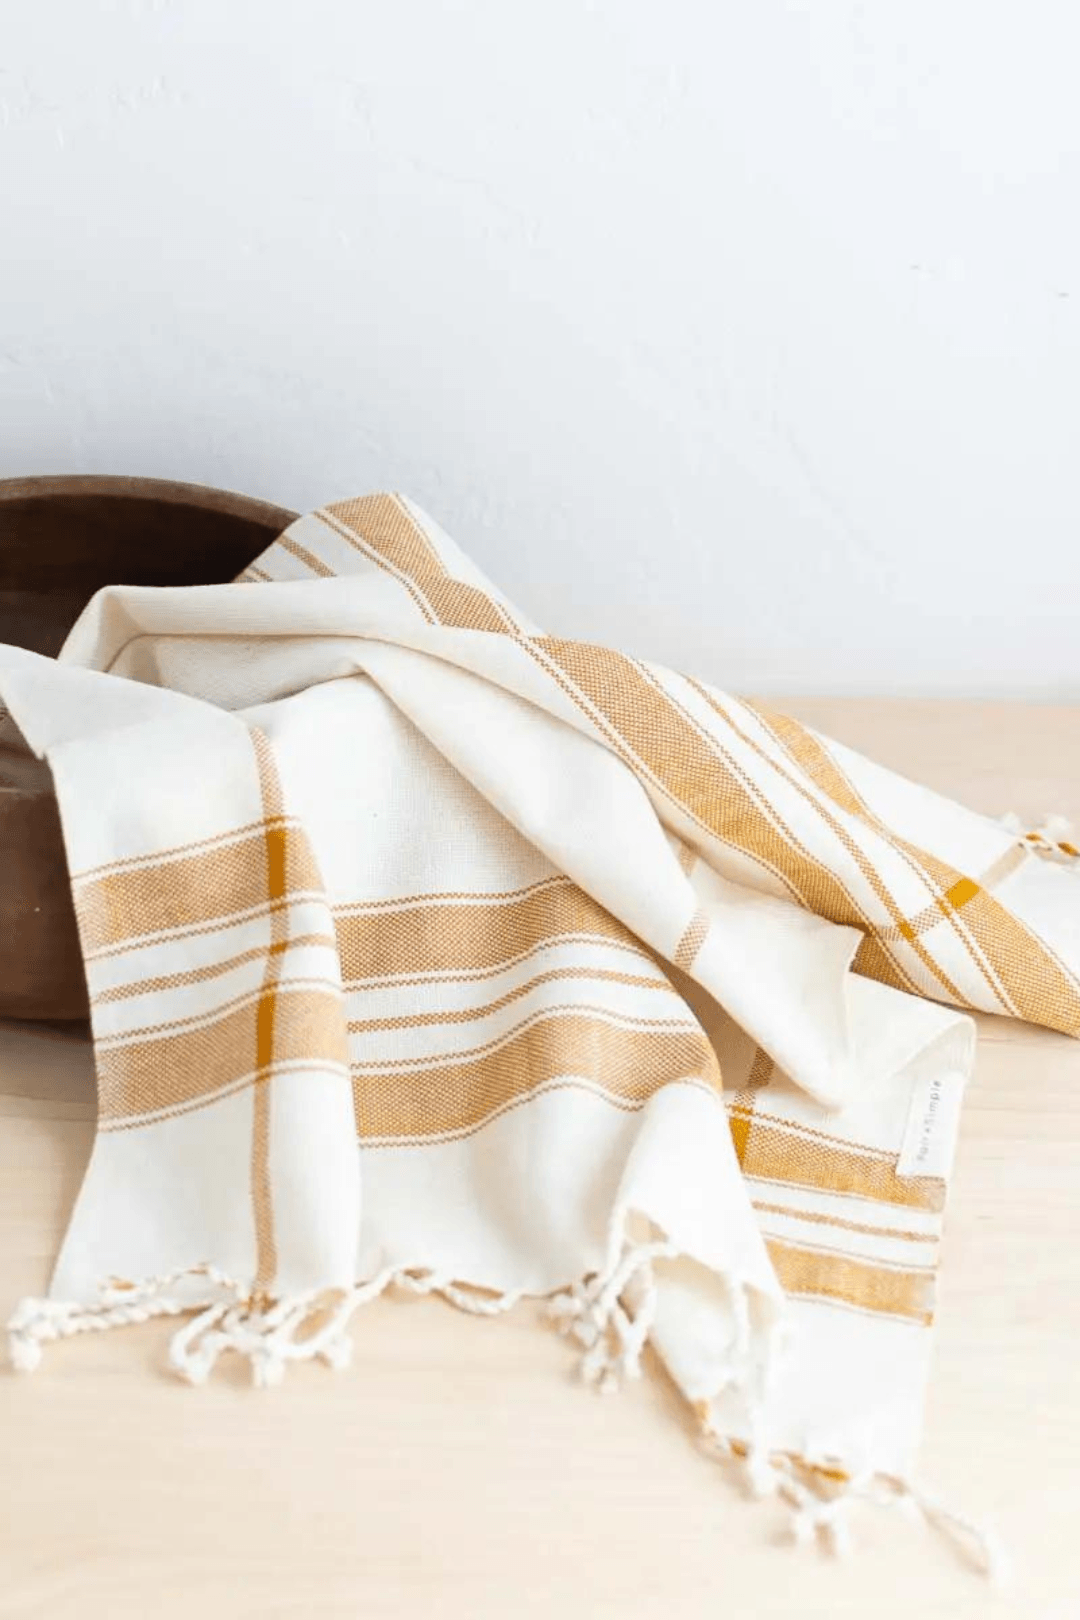 Saffron Striped Hand Towel - Ardent Market - Fair & Simple